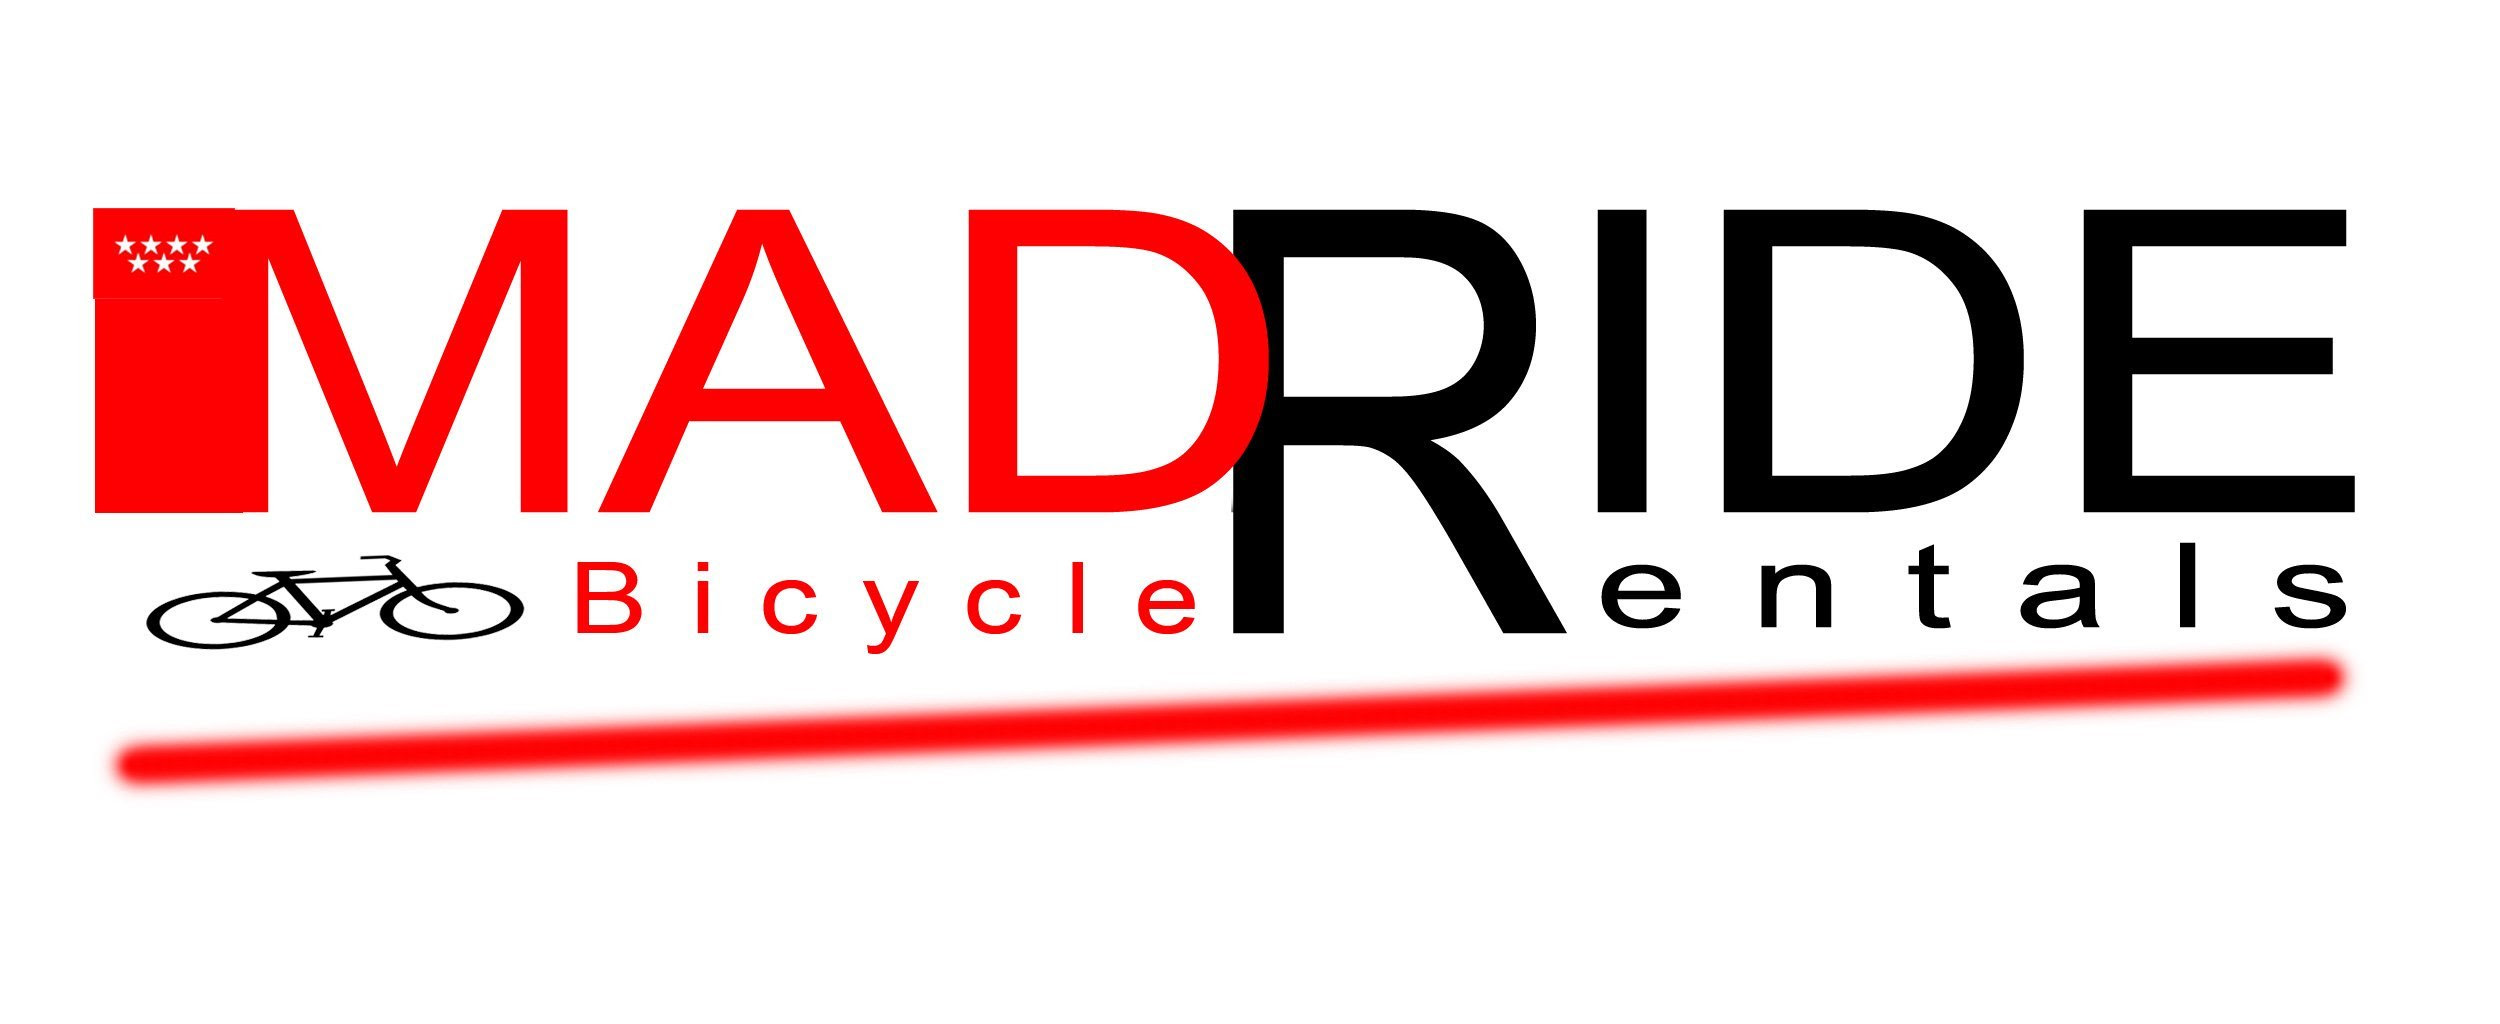 Logos para la bici pública de Madrid